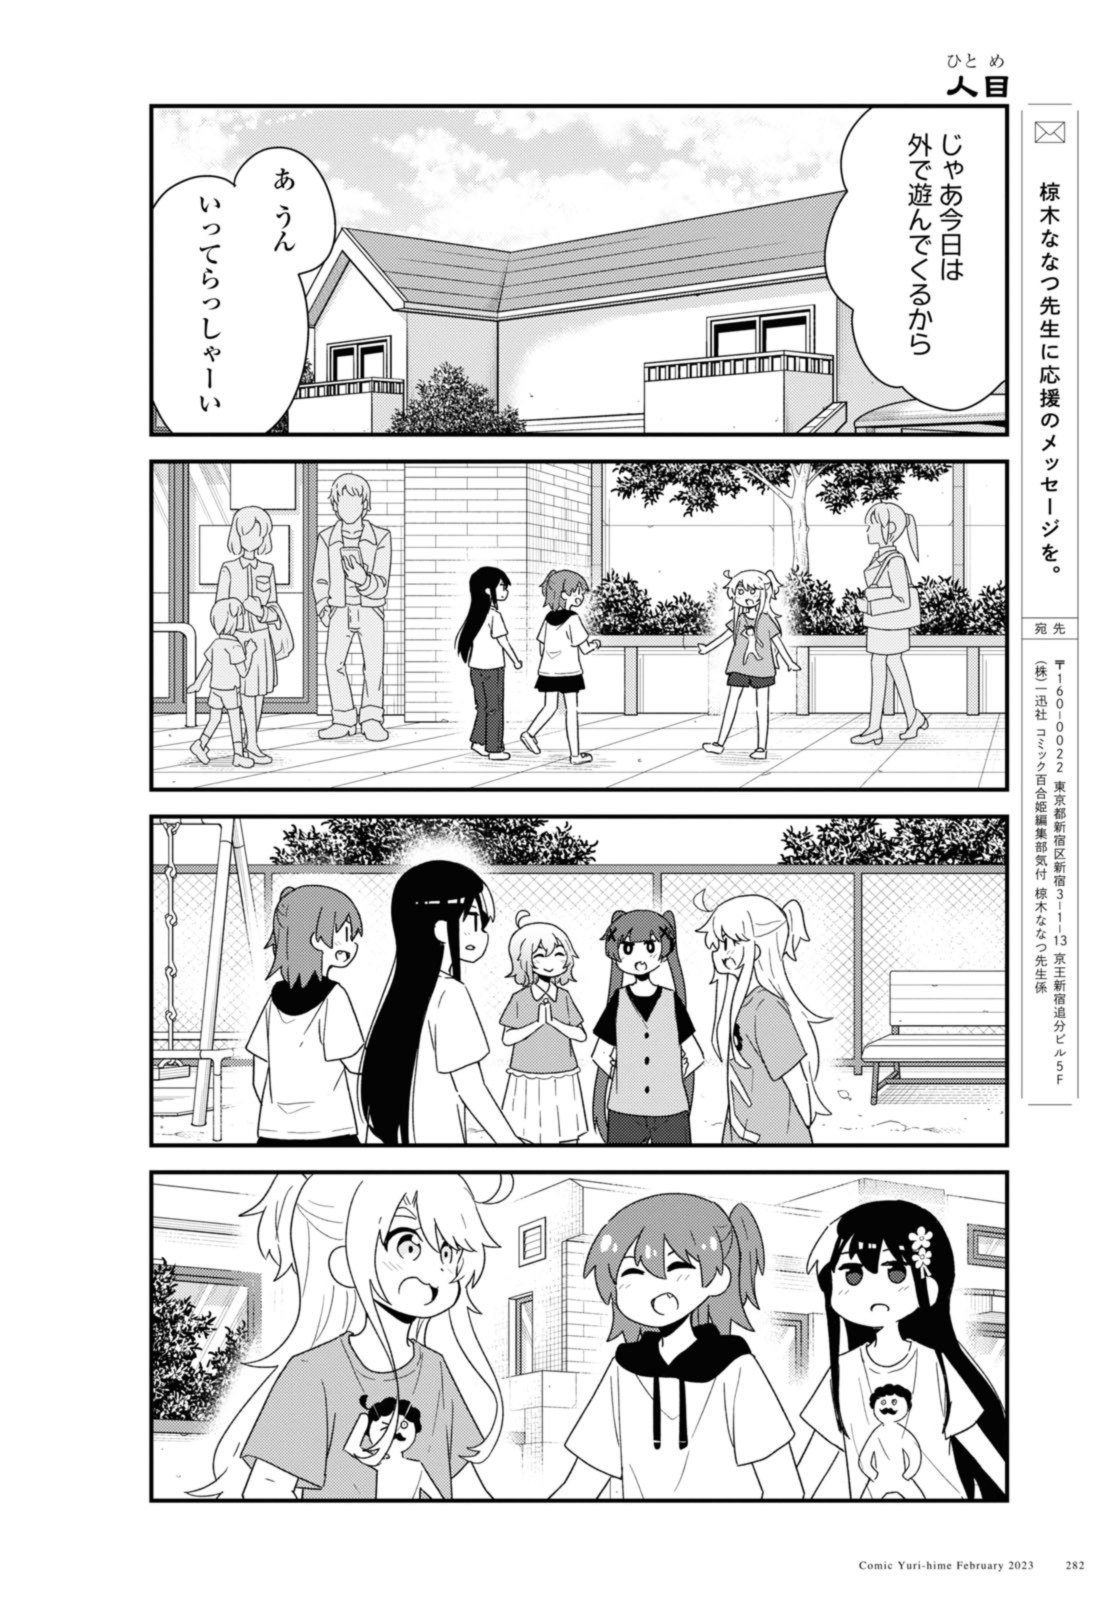 Watashi ni Tenshi ga Maiorita! - Chapter 102 - Page 14